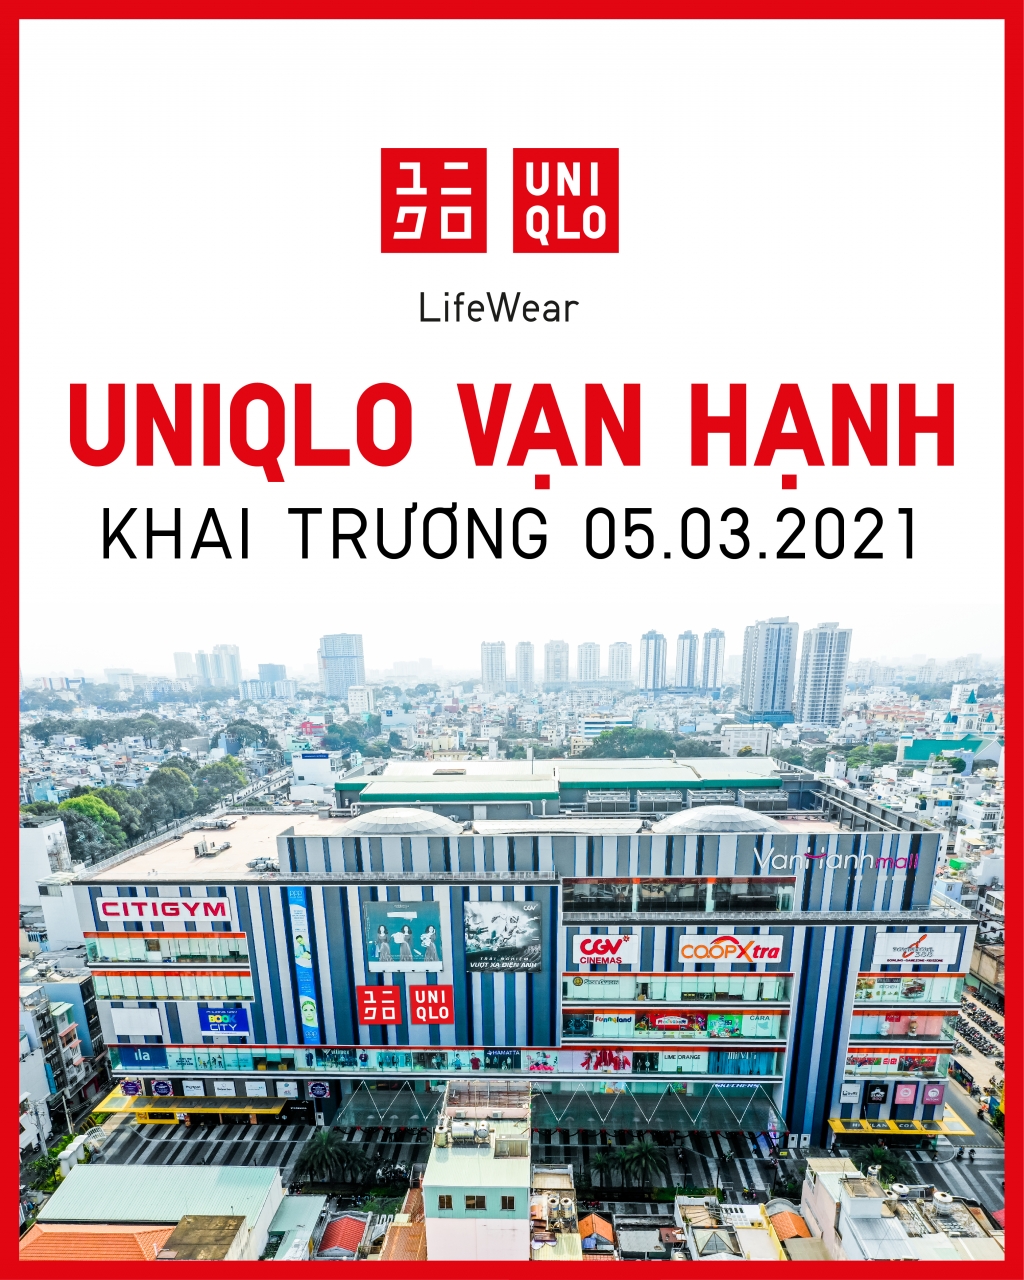 Cửa hàng UNIQLO thứ tư tại TP HCM sẽ khai trương ngày 5/3/2021